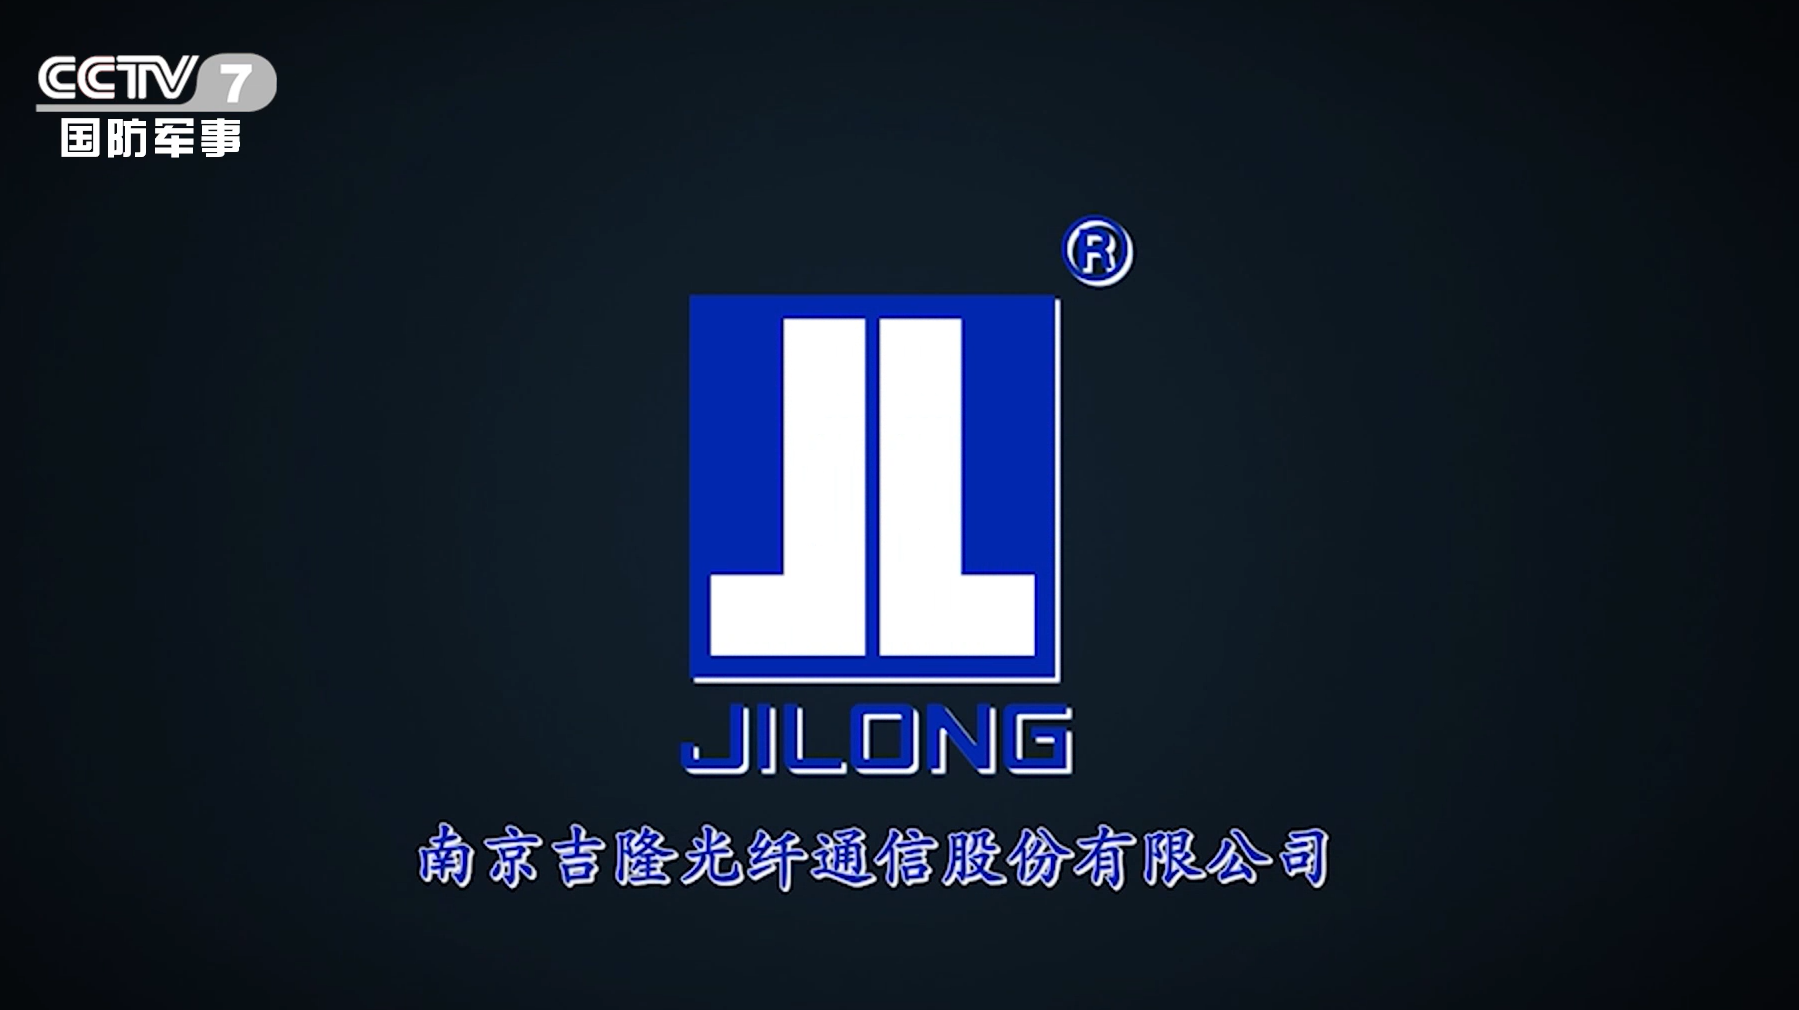 Épisseur de fusion de fibre optique Jilong